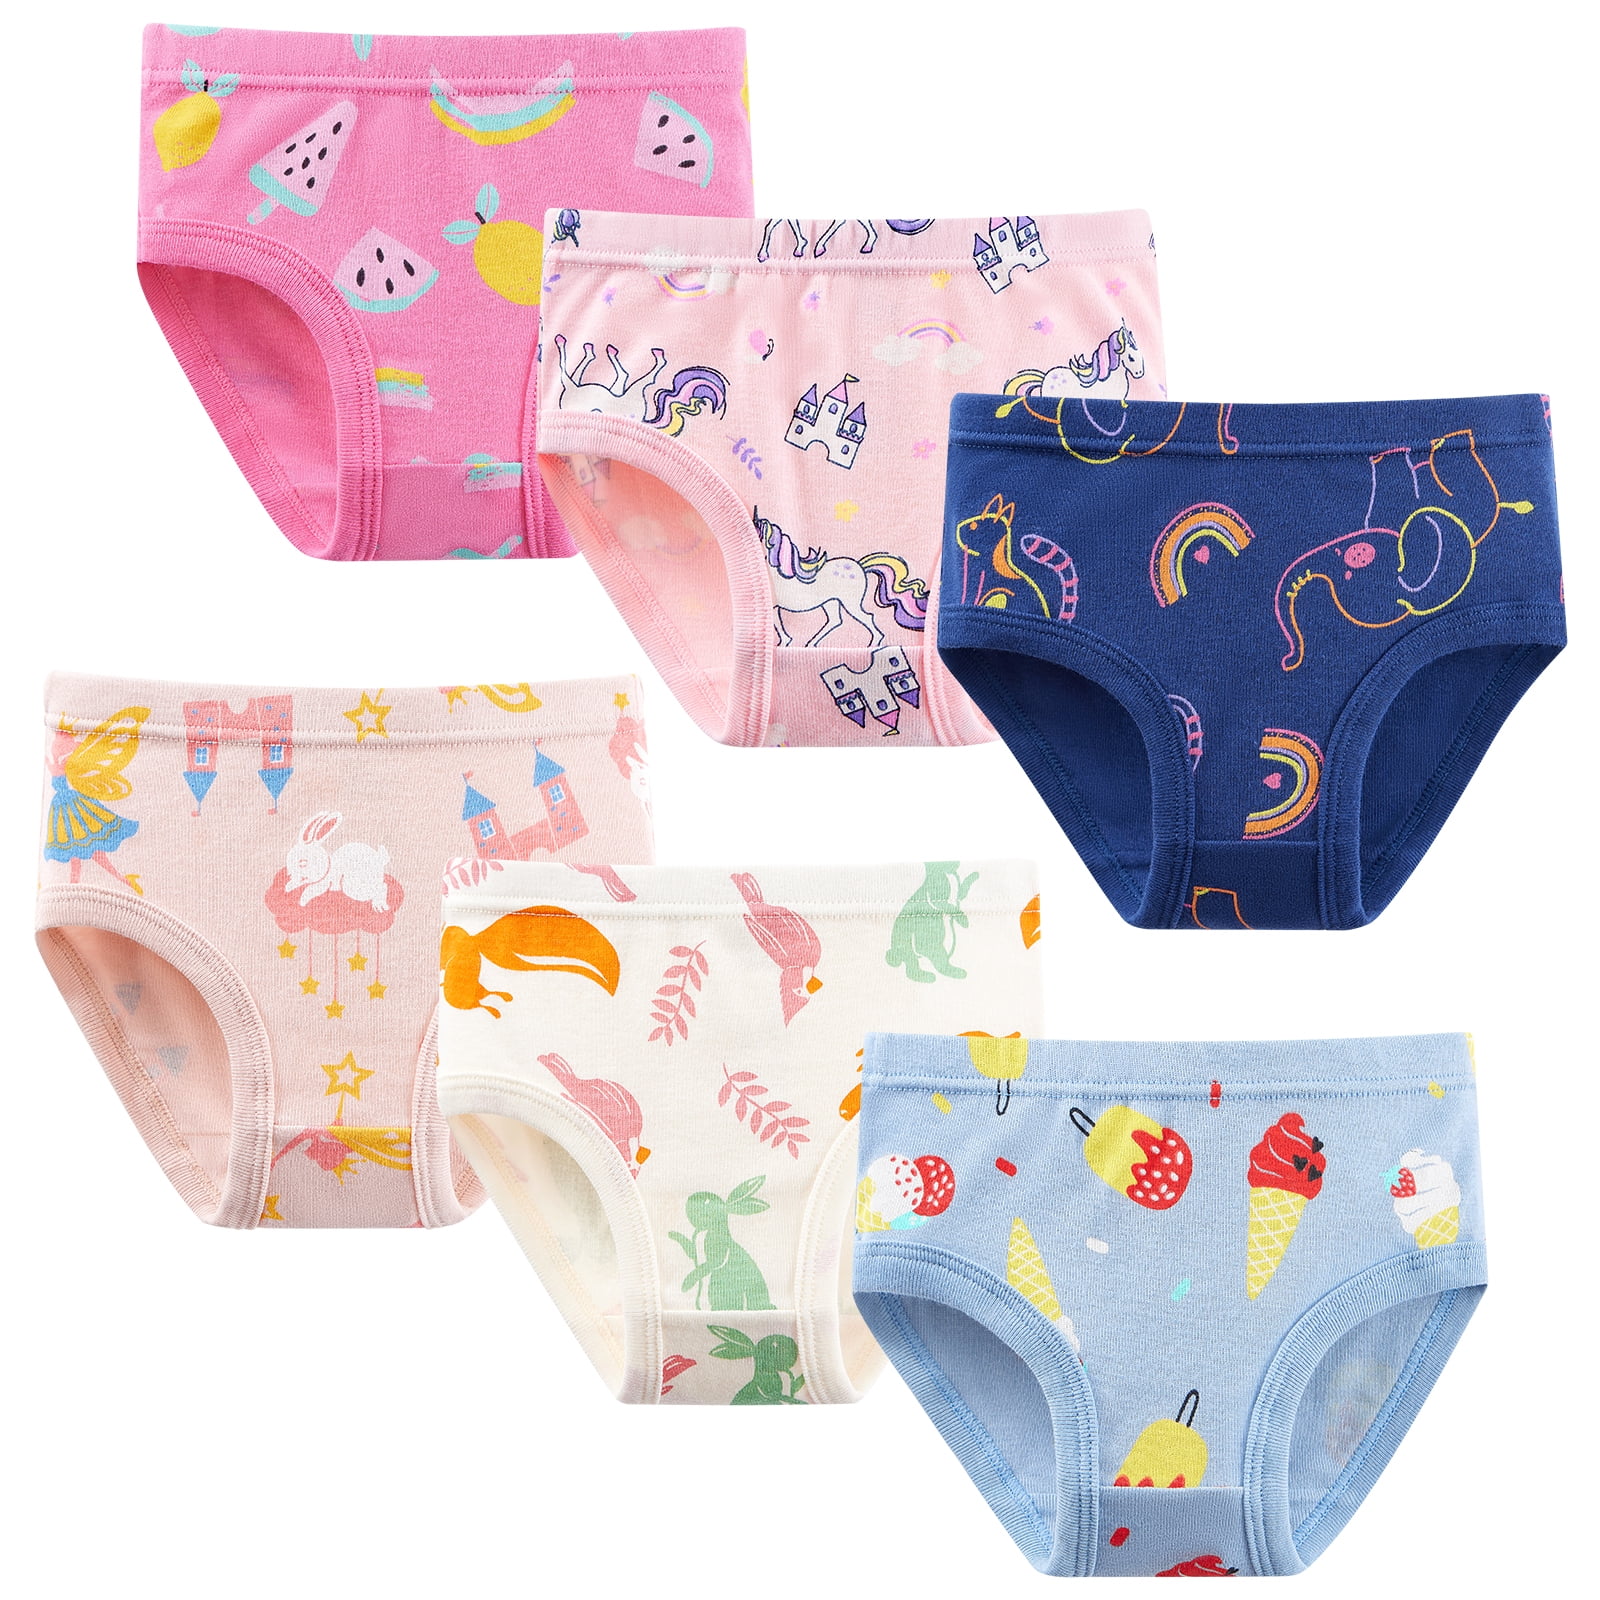 Toddler Underwear Kids Undies Girls Cotton Panties Size 5-6T (Pack of 6) 